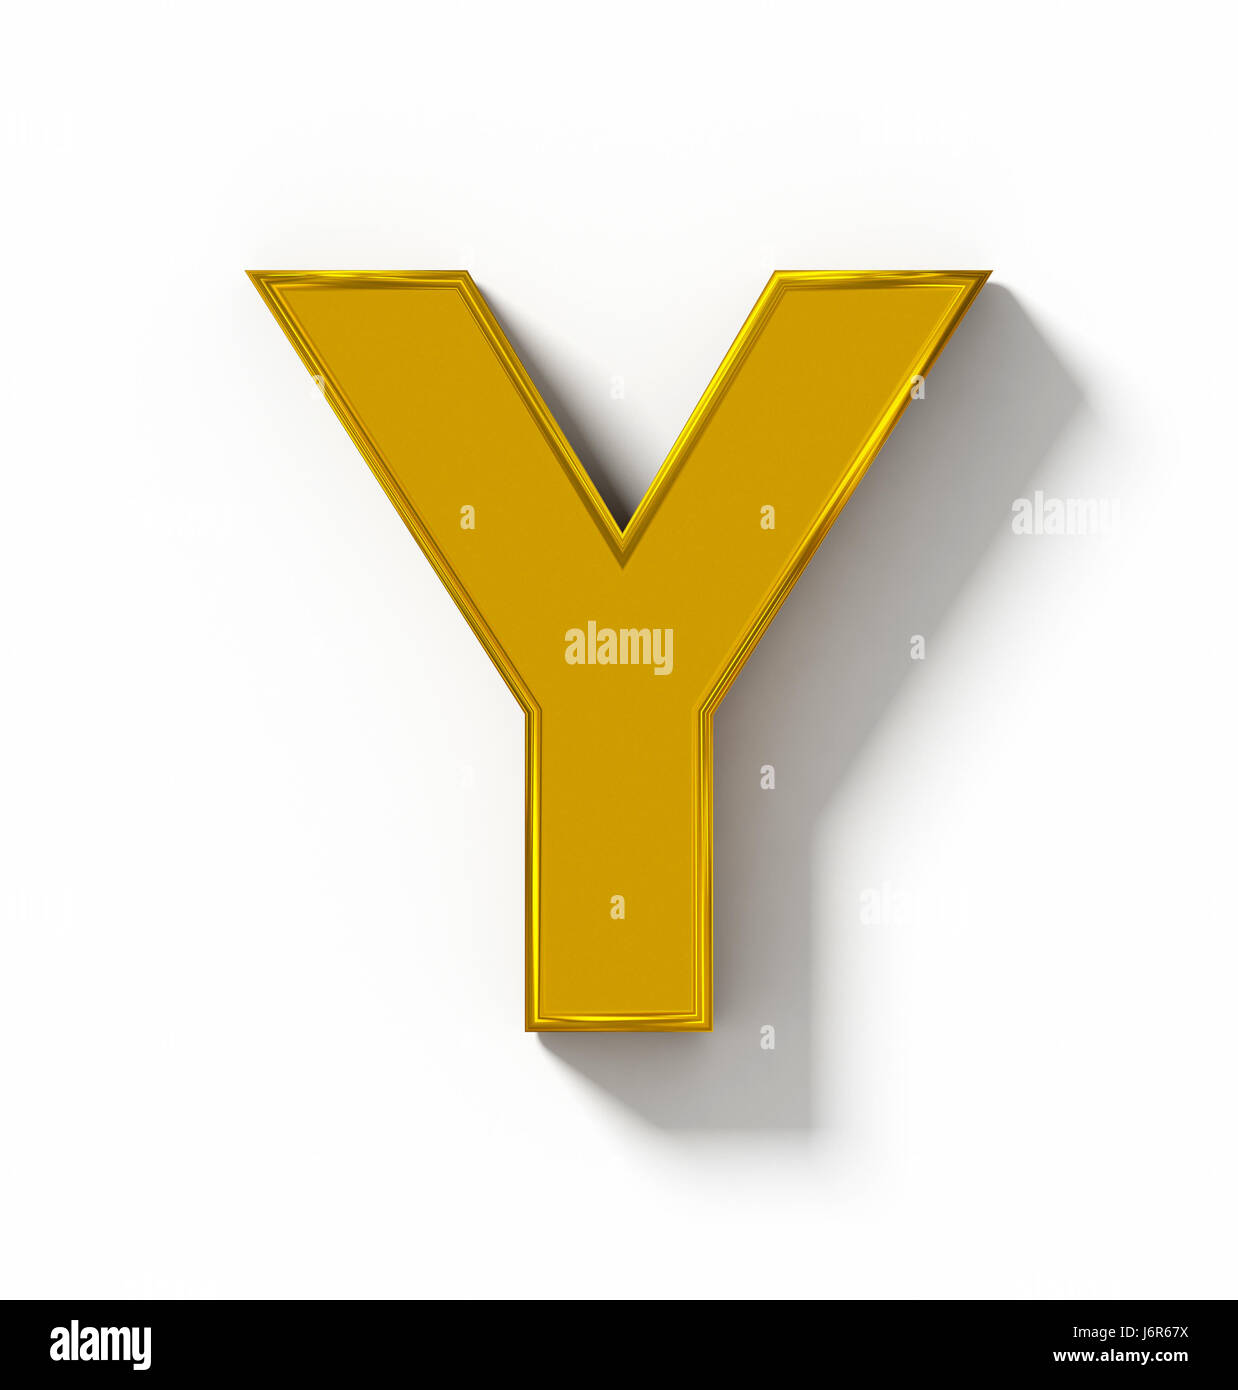 Buchstabe Y 3D Golden isoliert auf weiß mit Schatten - orthogonale Projektion - 3d rendering Stockfoto